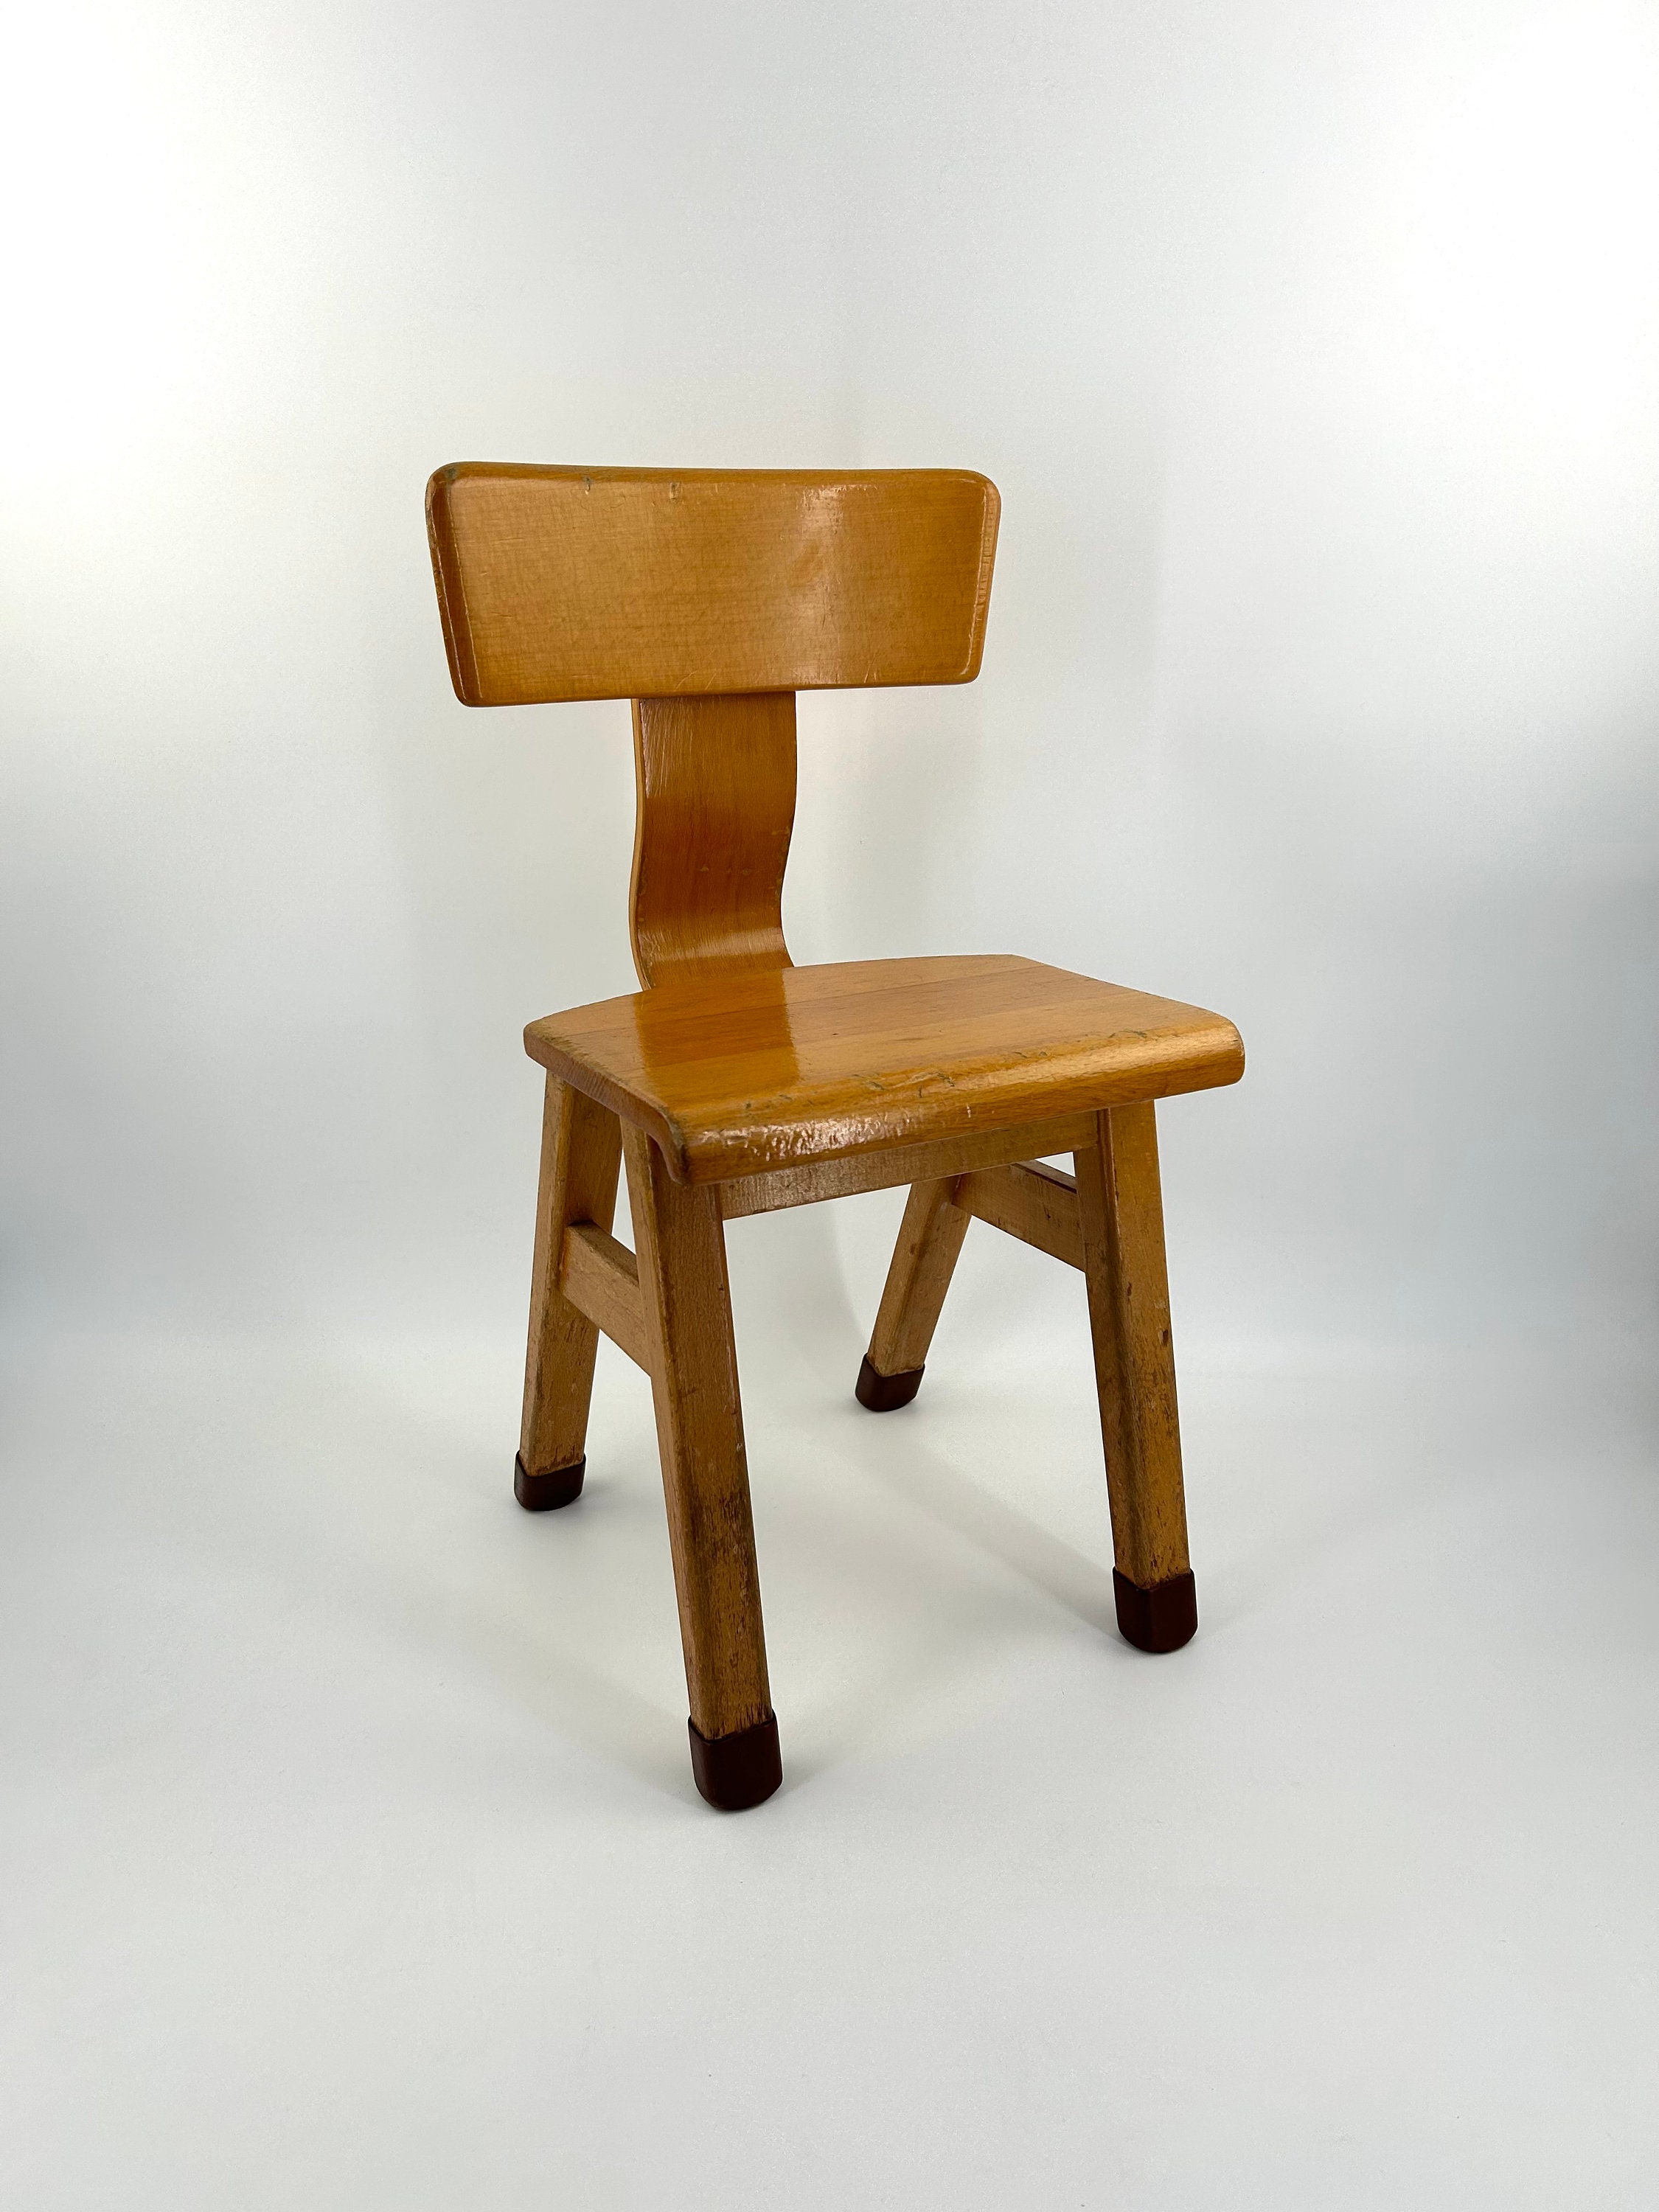 Buigen Schiereiland opstelling Vintage Wooden Child's Chair / School Chair - Etsy